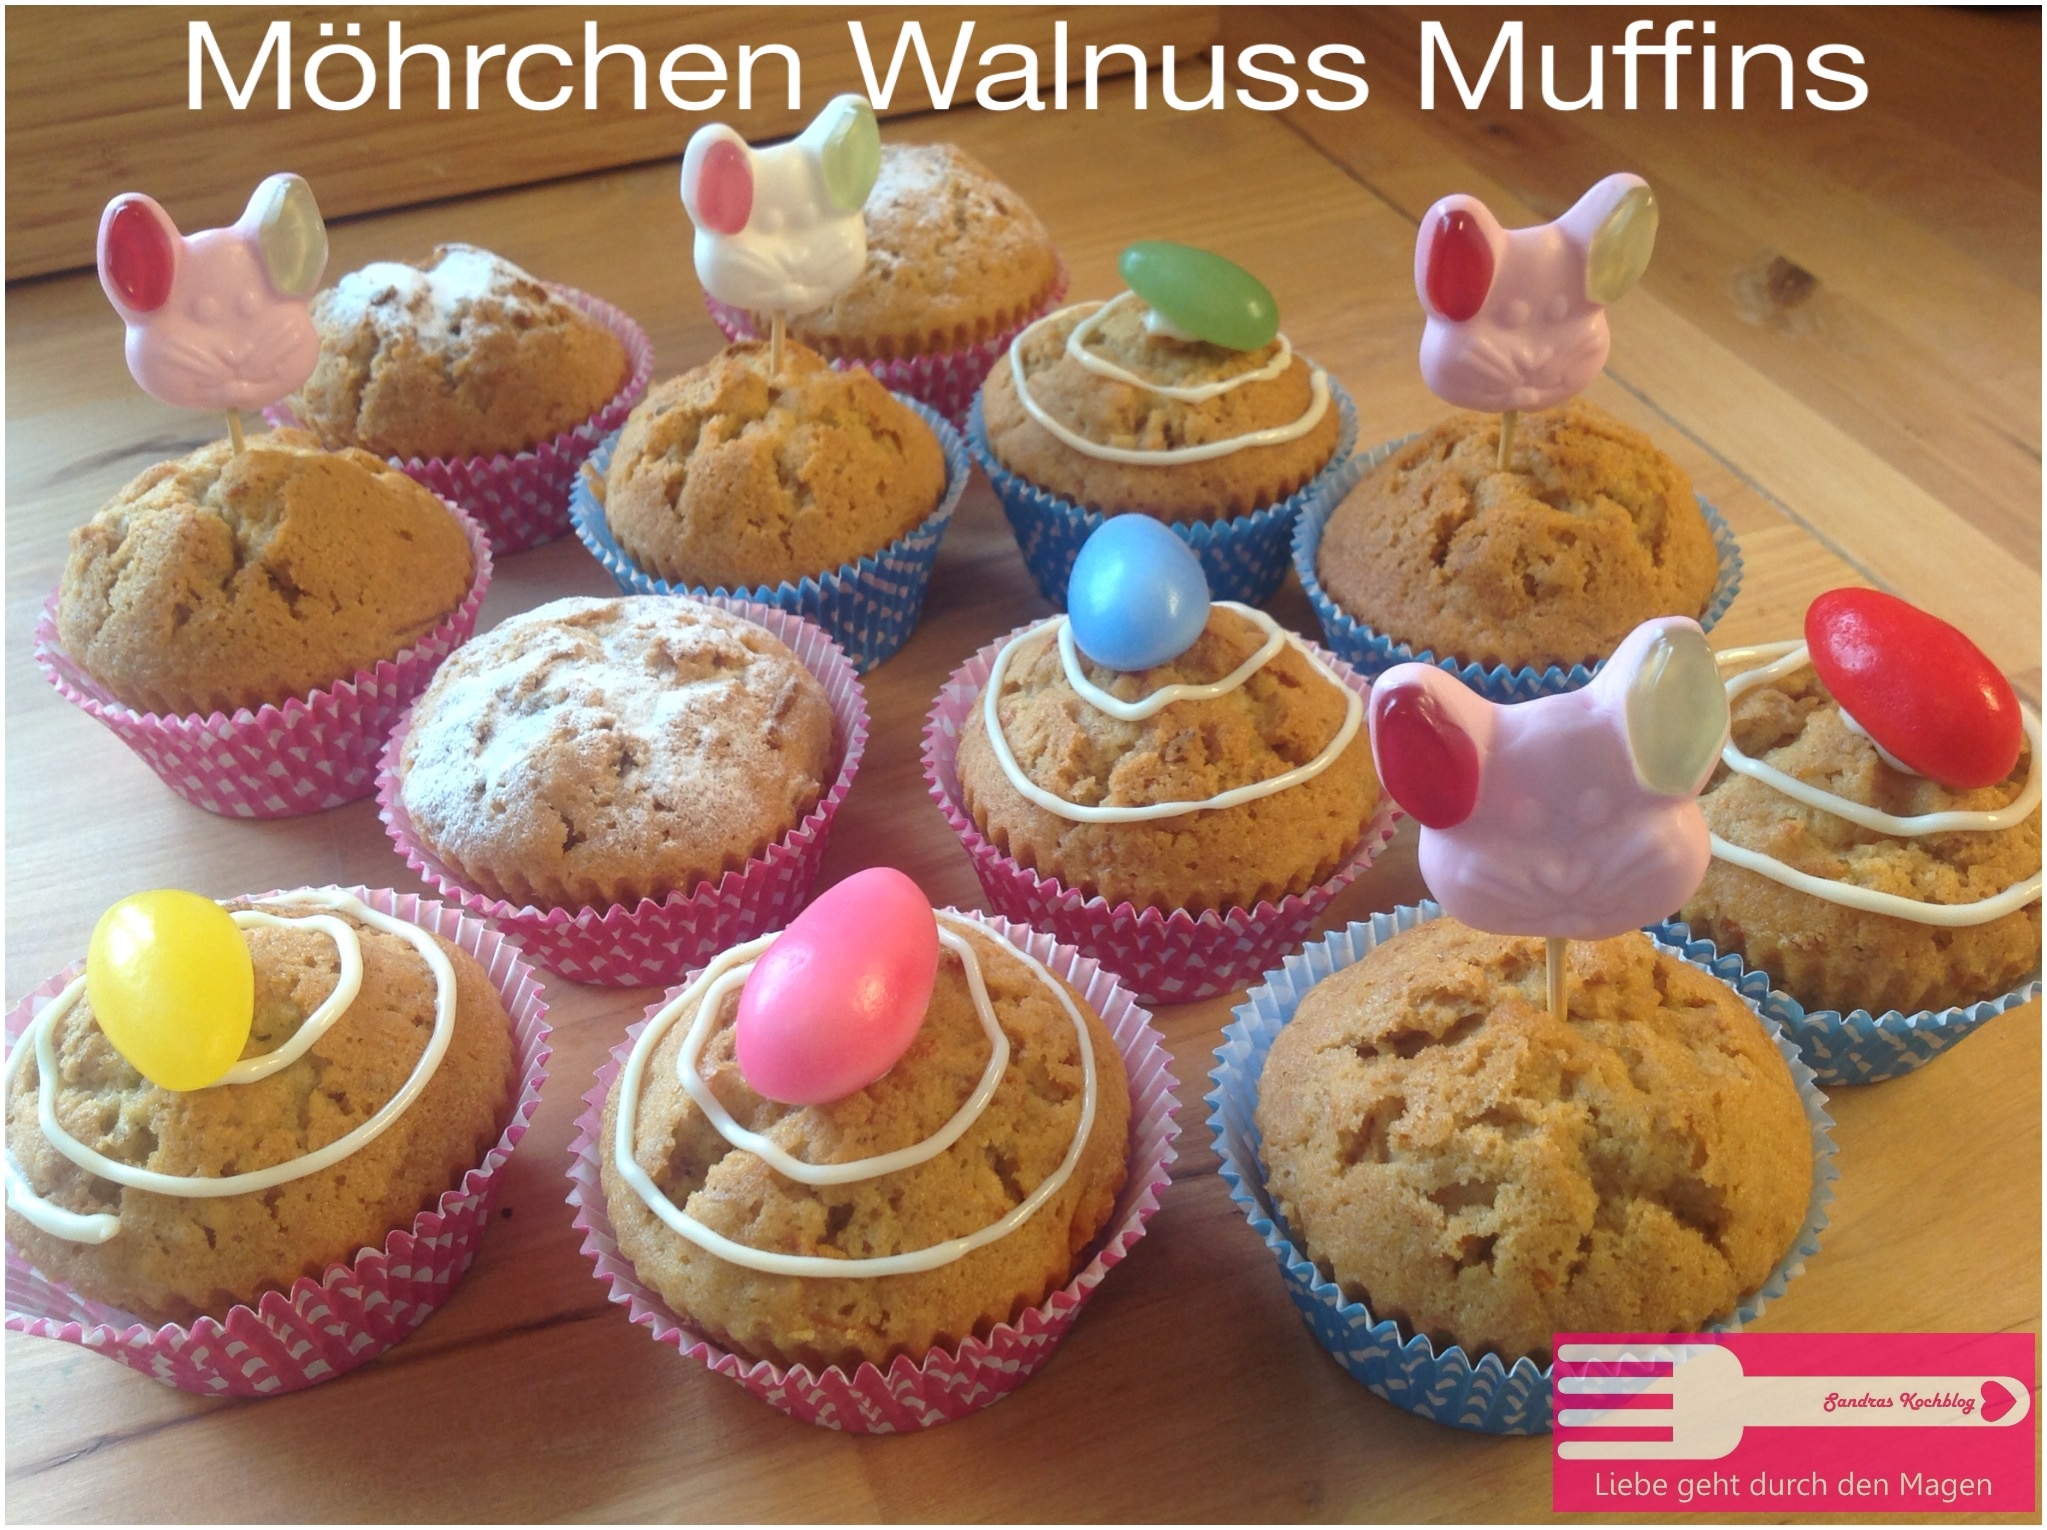 Möhrchen Walnuss Muffins - Sandras Kochblog